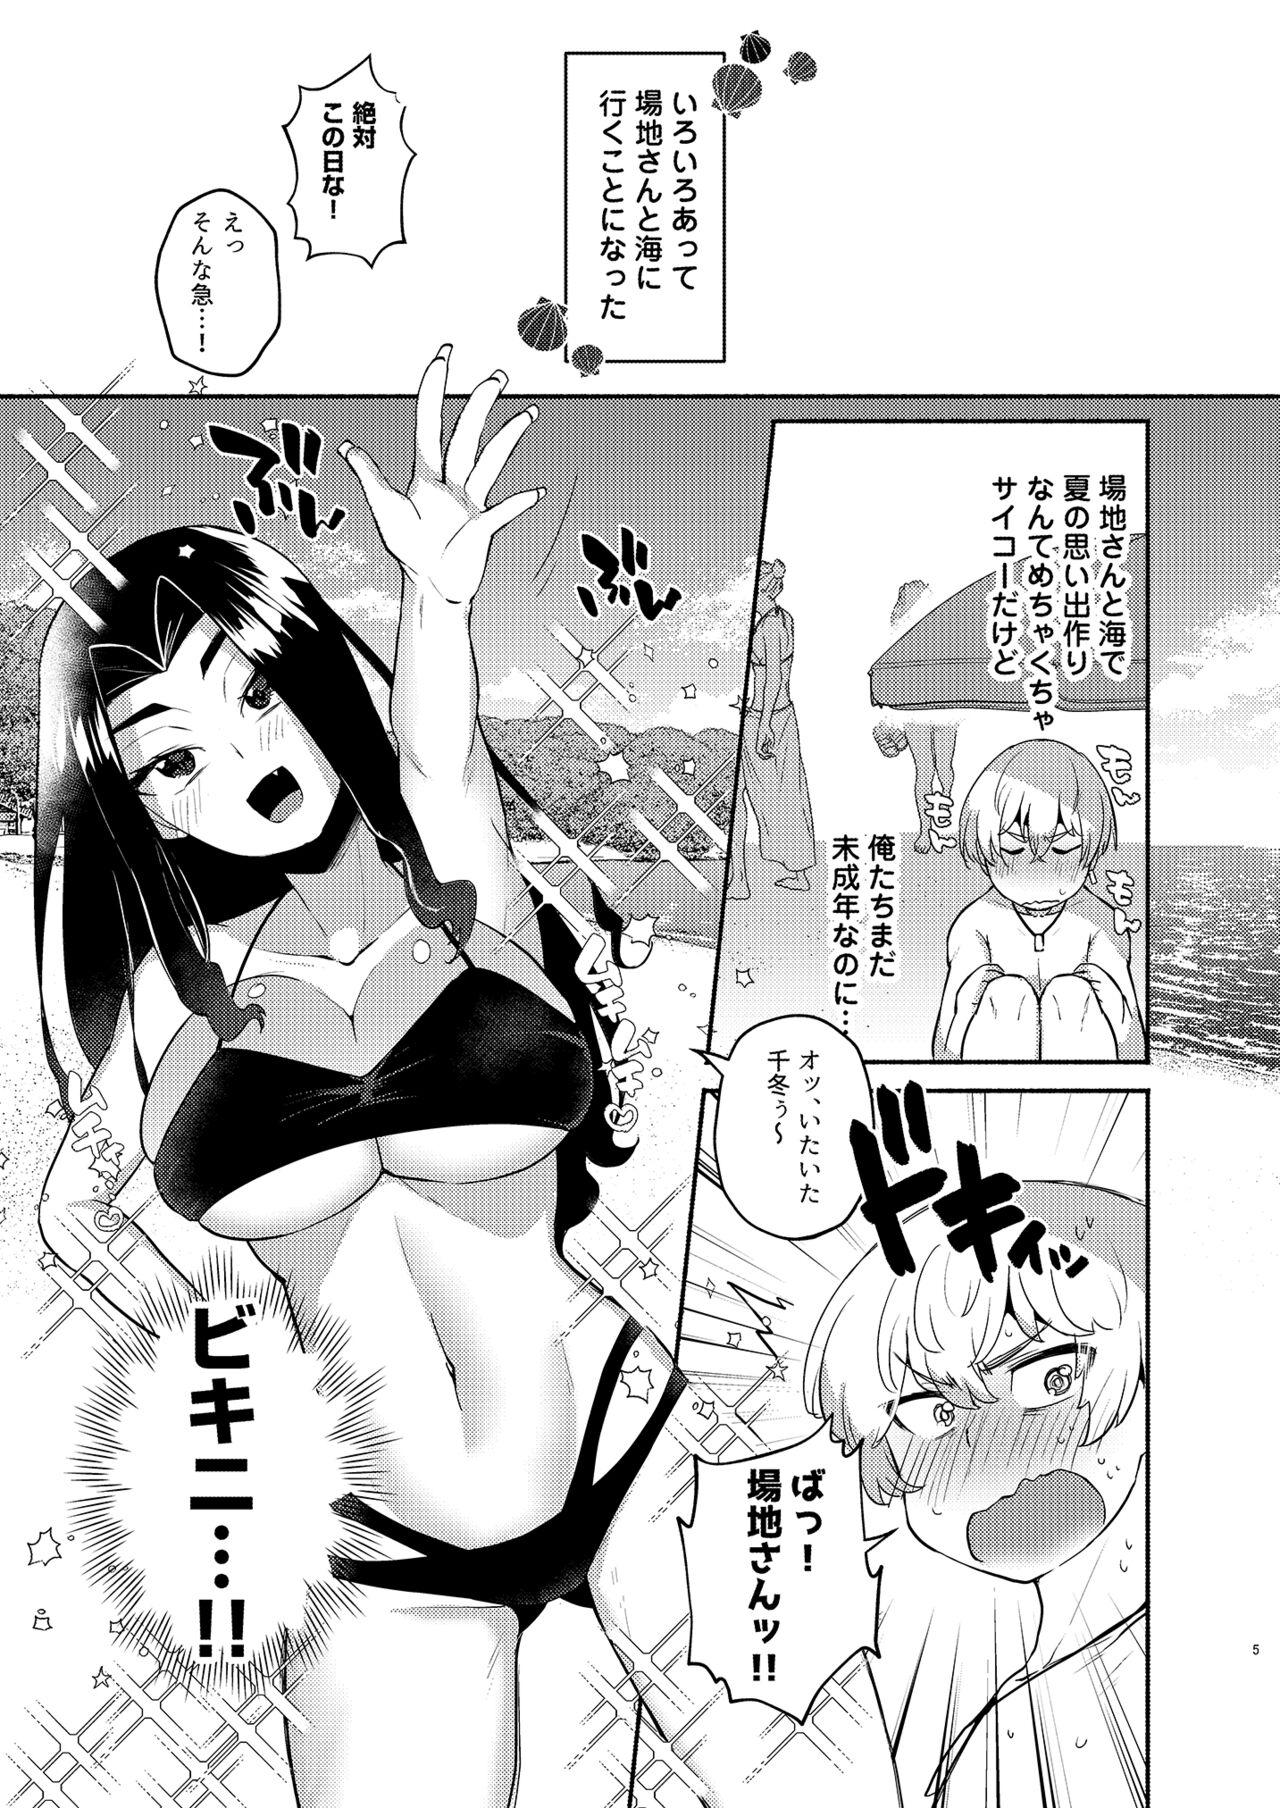 Fellatio Hito Natsu no Mermaid - Tokyo revengers Hot Girl Fuck - Page 5